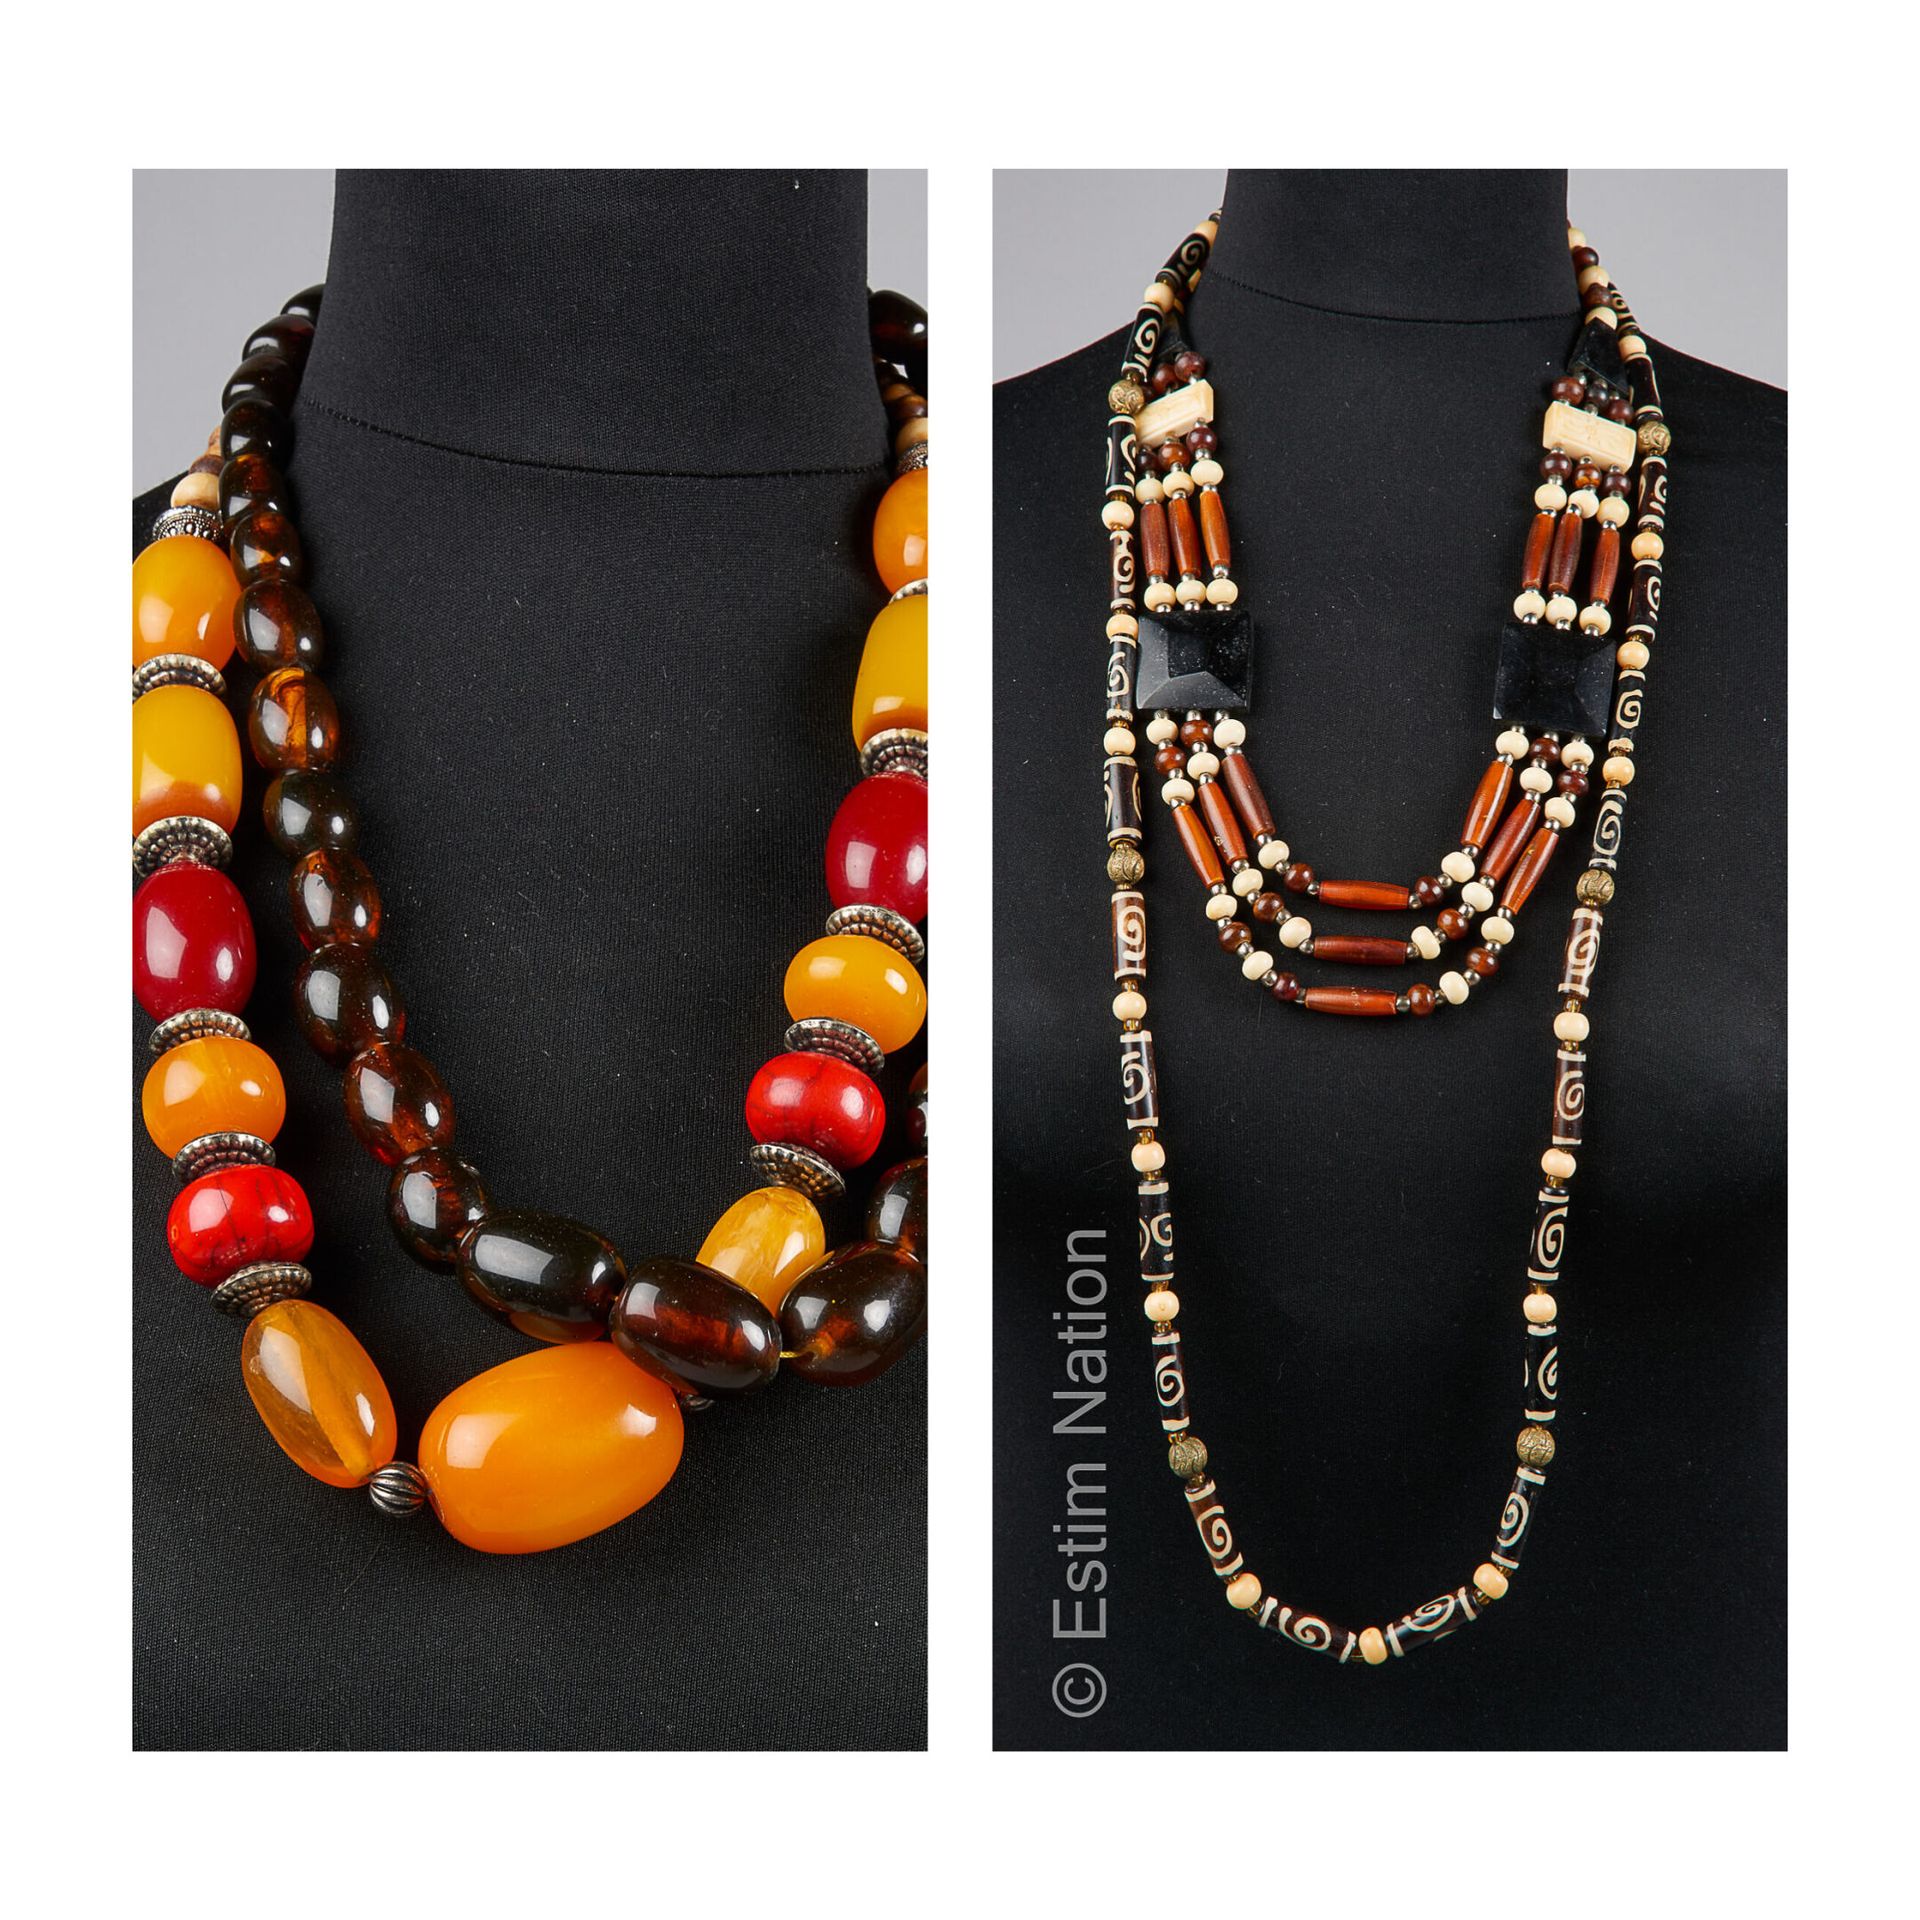 ANONYME 四条非洲风格的项链，由珍珠和各种电木制成（不保证状态）。